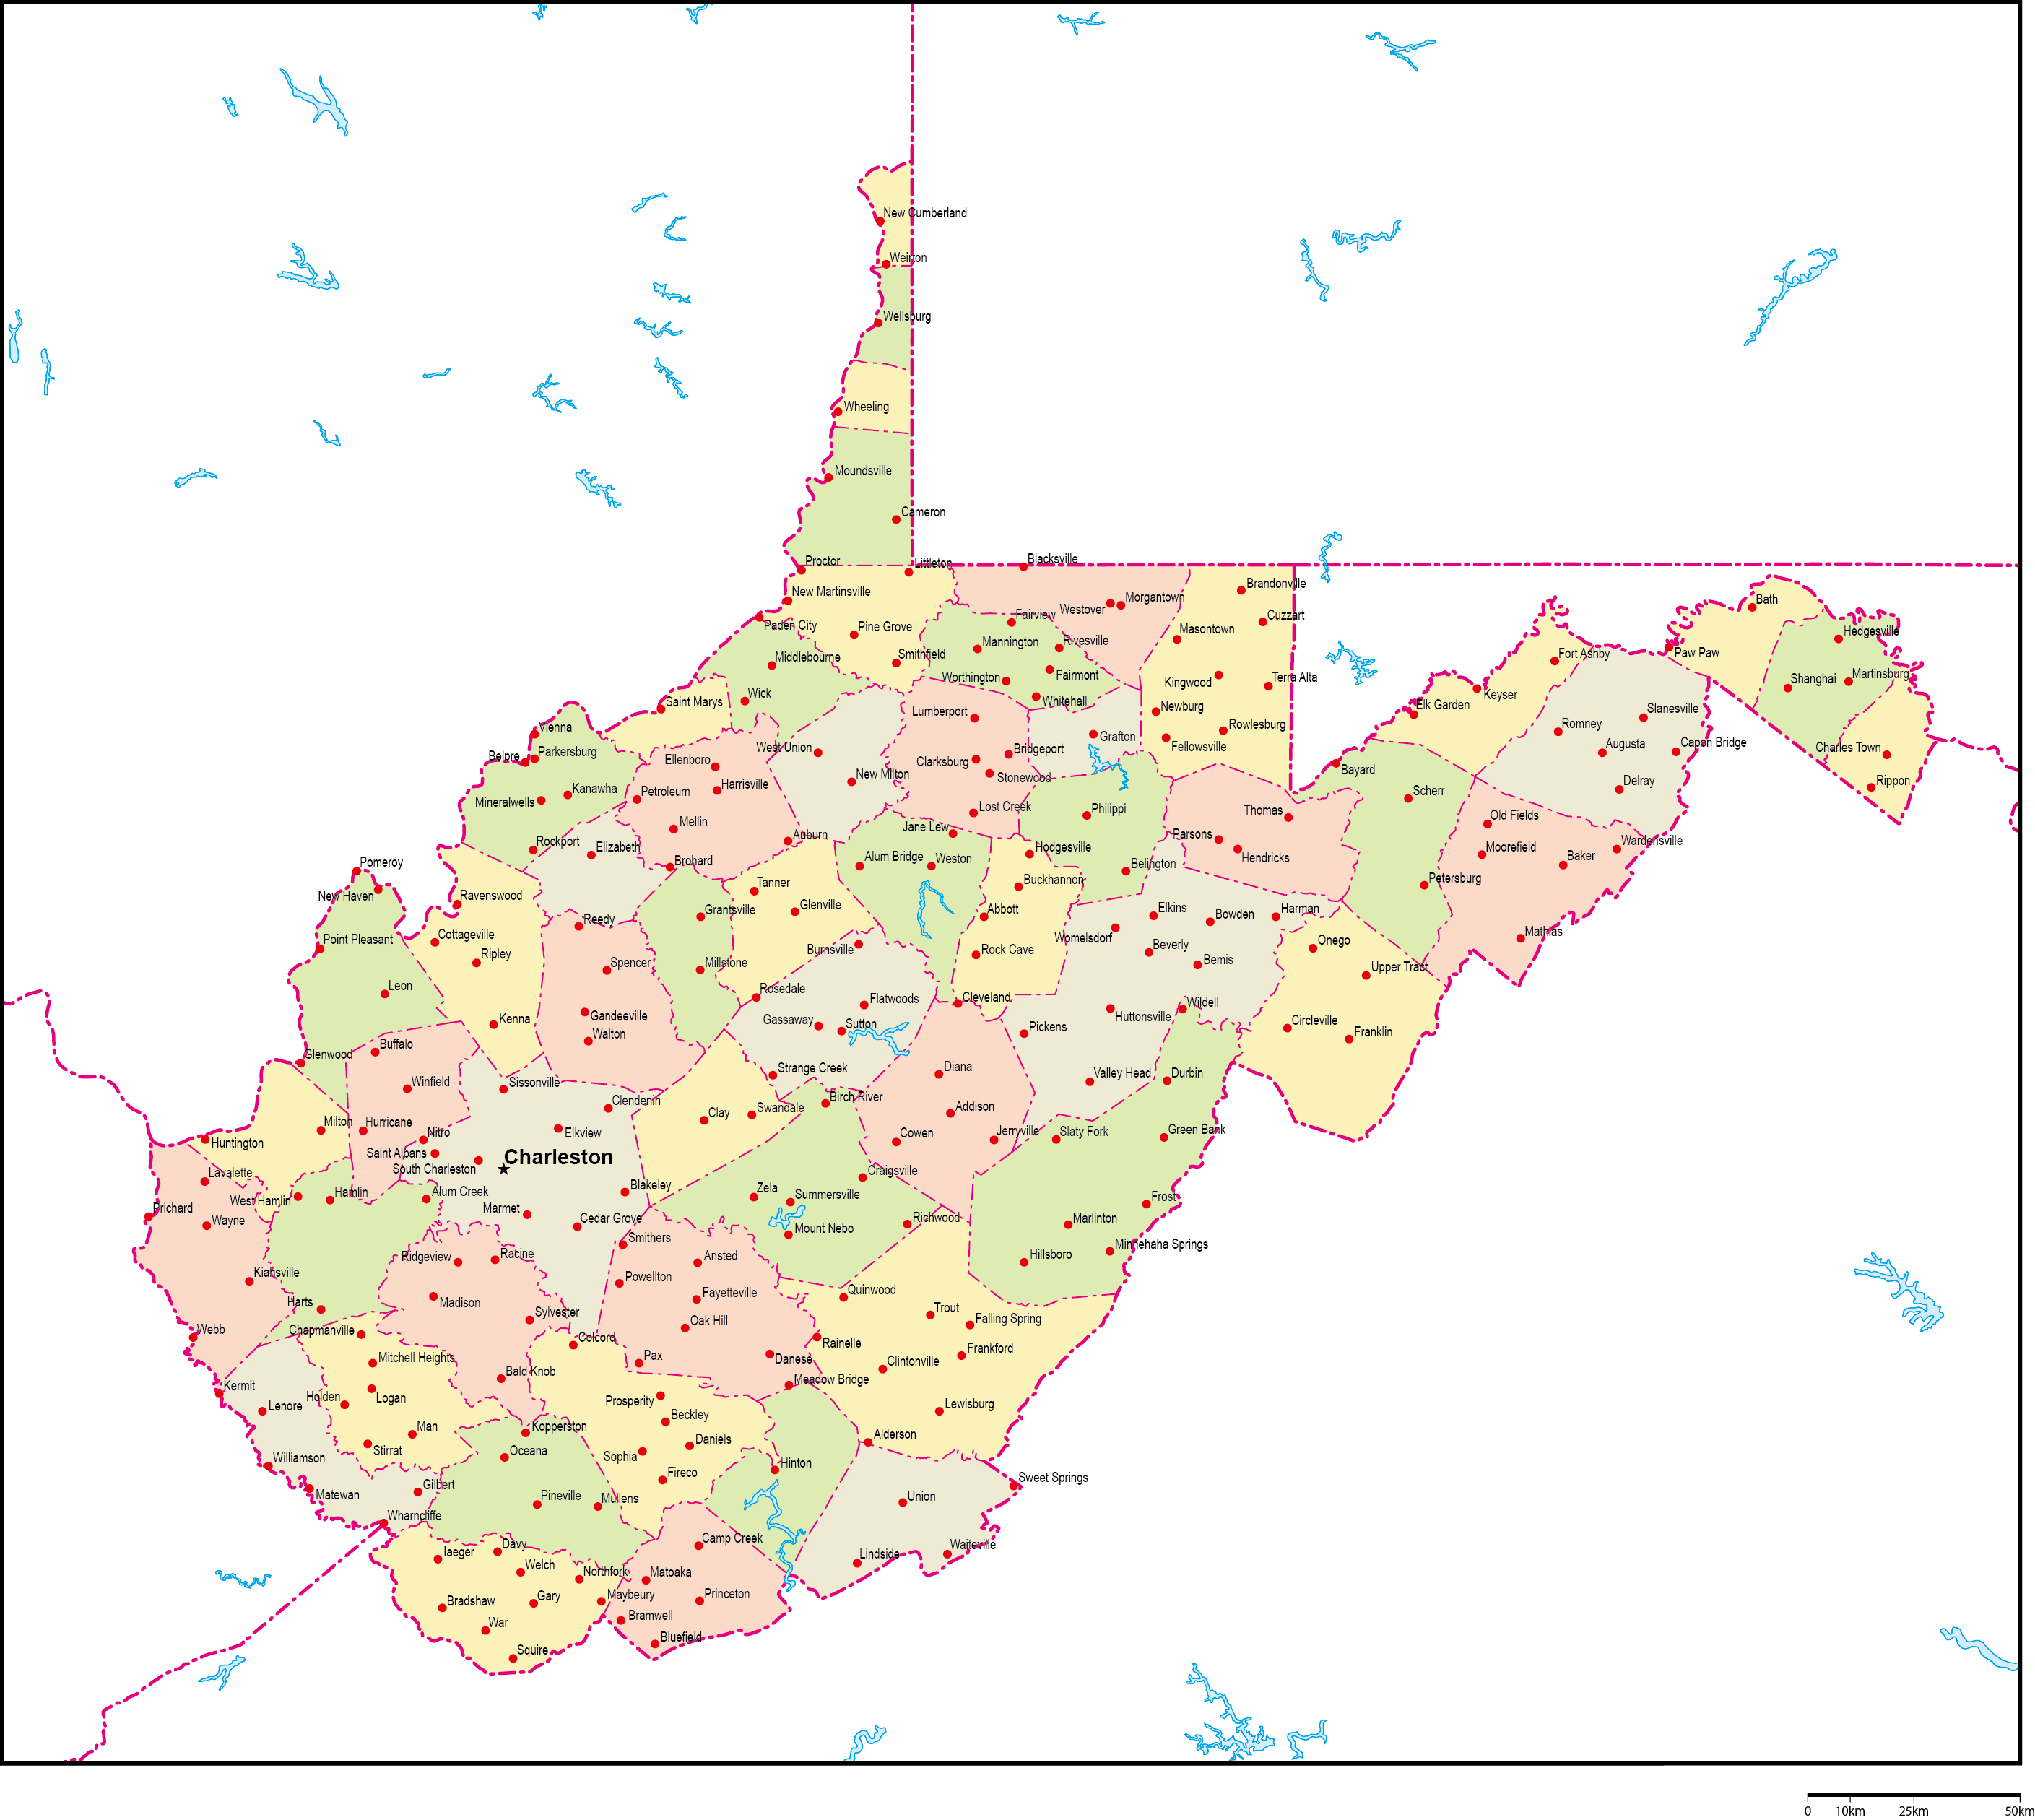 ウェストバージニア州郡色分け地図州都・主な都市あり(英語)フリーデータの画像